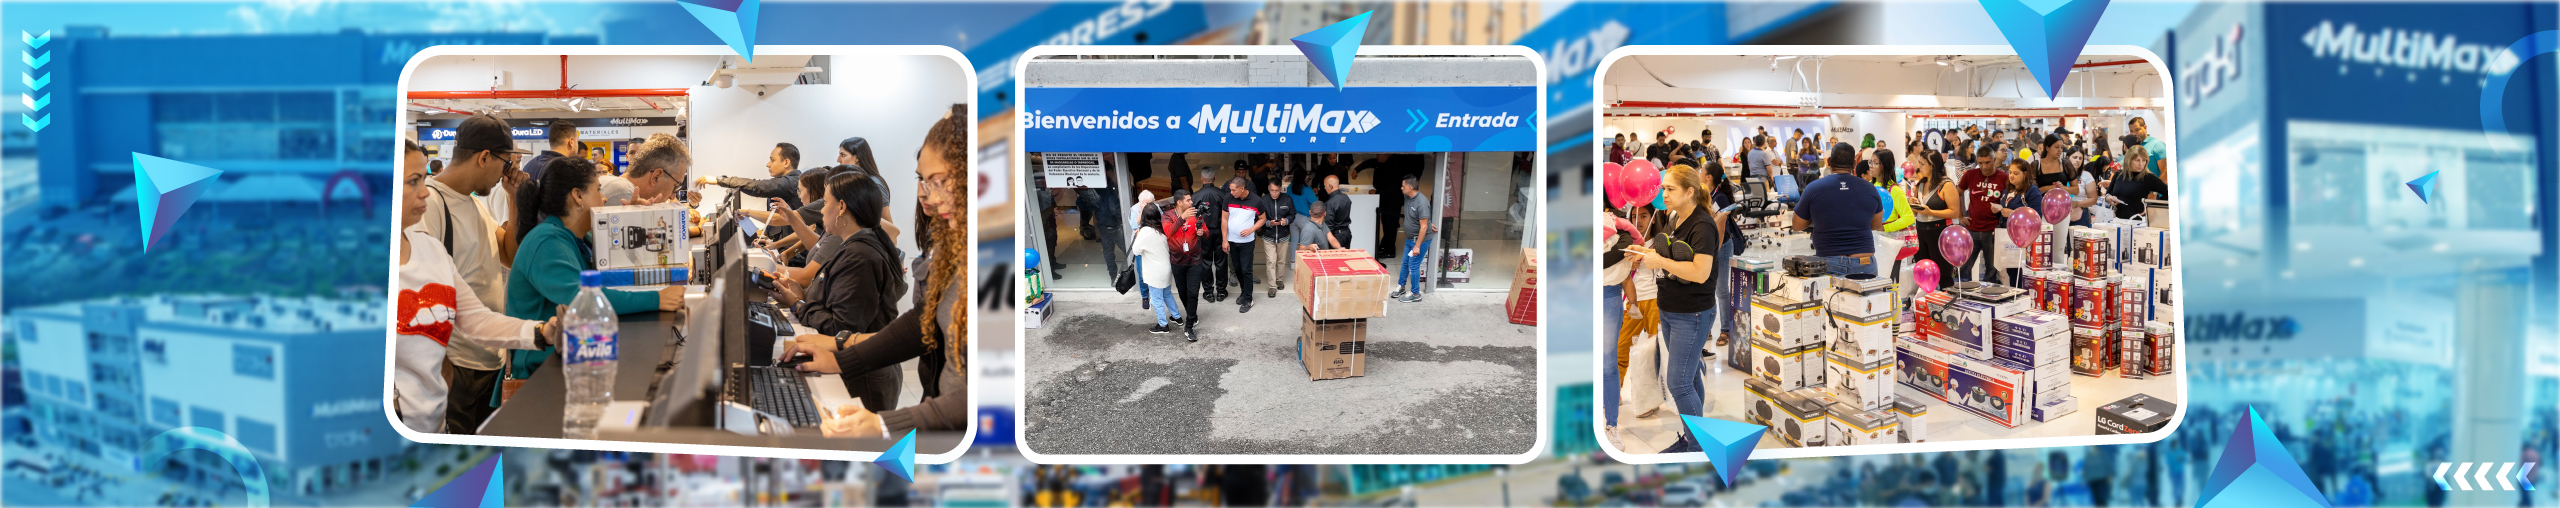 Multimax Express Los Aviadores